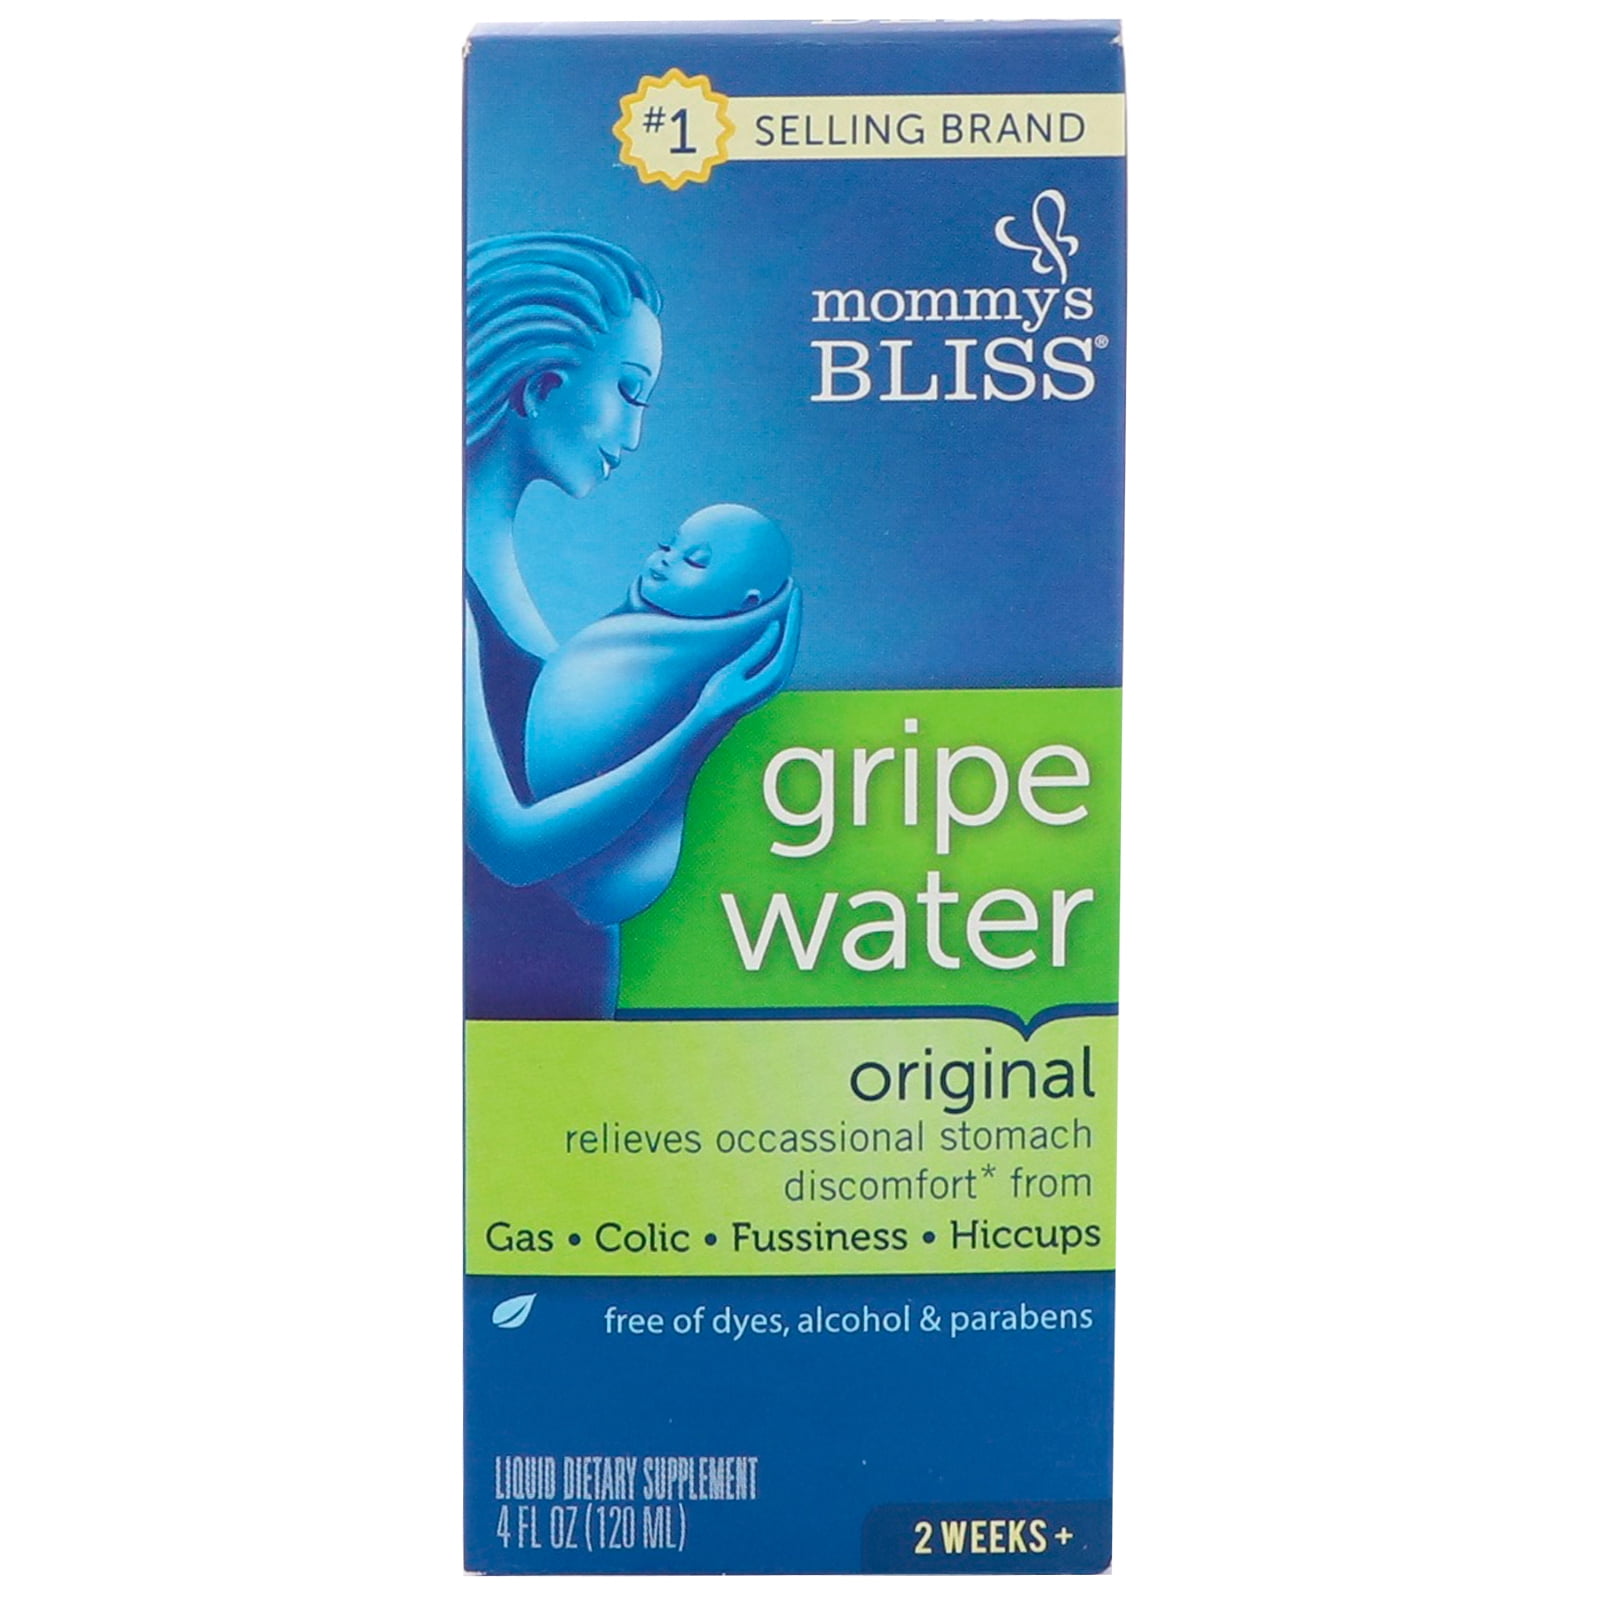 mommy's bliss gripe water walmart